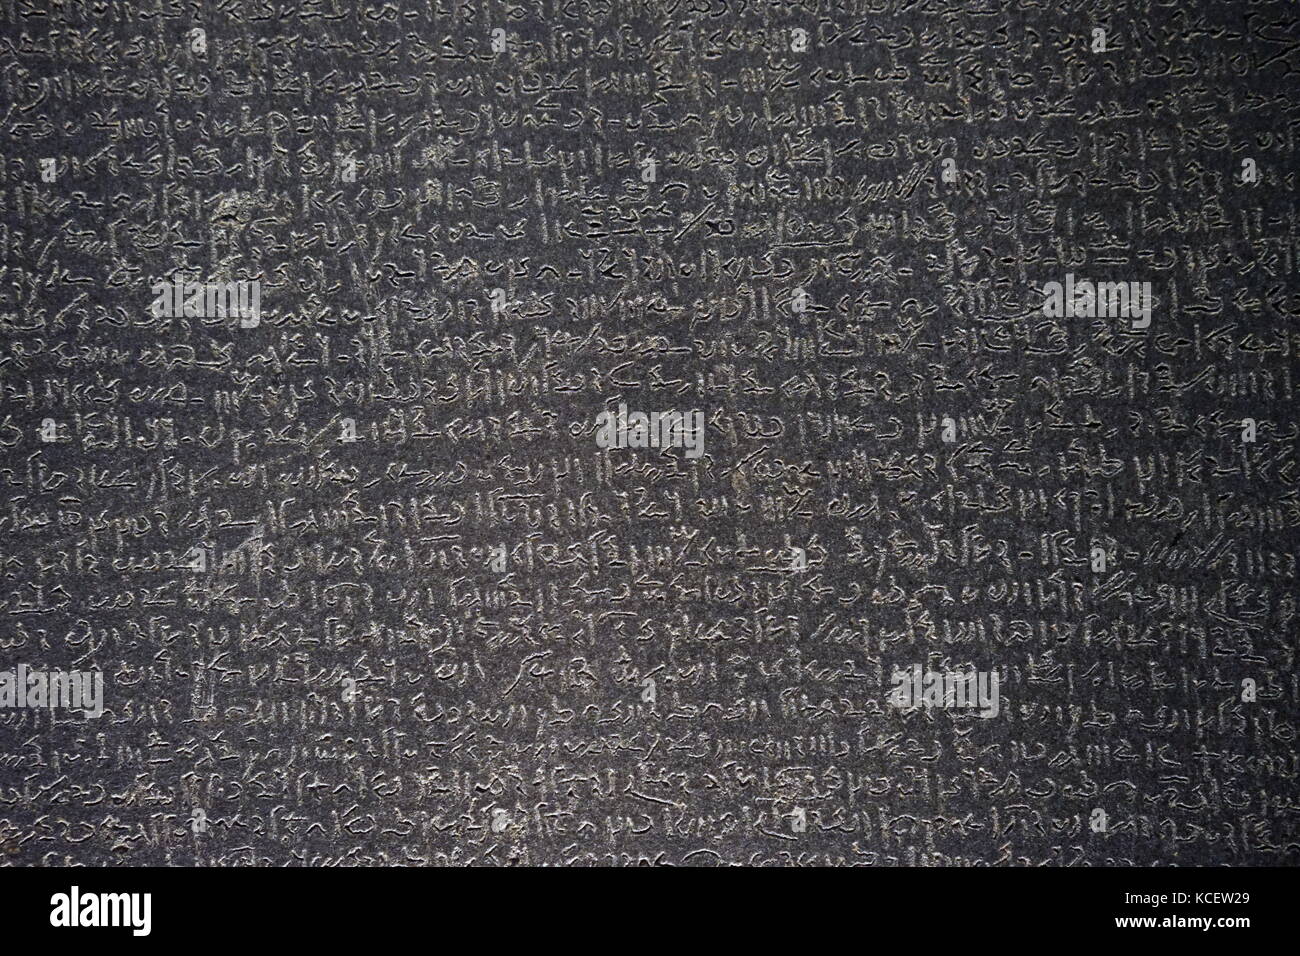 La piedra de Rosetta es una roca de estela, encontrado en 1799, inscrito con un decreto emitido en Menfis, Egipto, en 196 A.C. en nombre del Rey Ptolomeo V. En el decreto aparecen en tres secuencias de comandos:, la porción central se muestra aquí, es script demótica Foto de stock